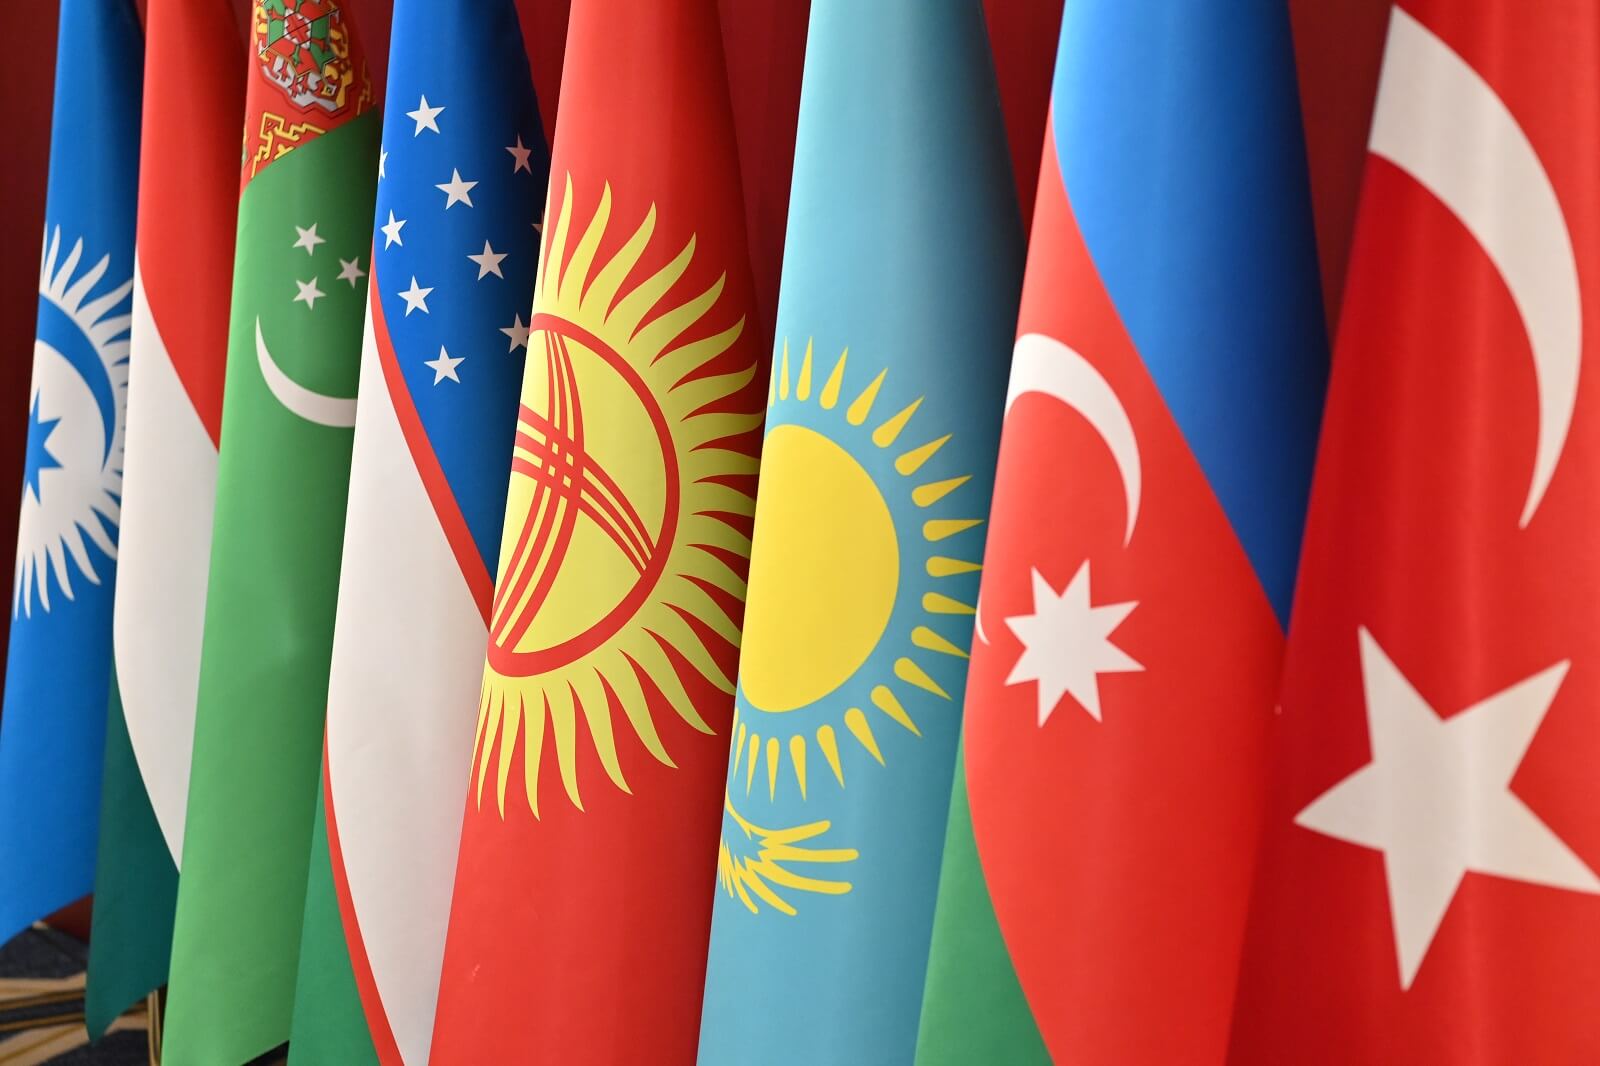 Türk dünyasının birliyi möhkəmlənir: Parlamentlərin əməkdaşlığı...